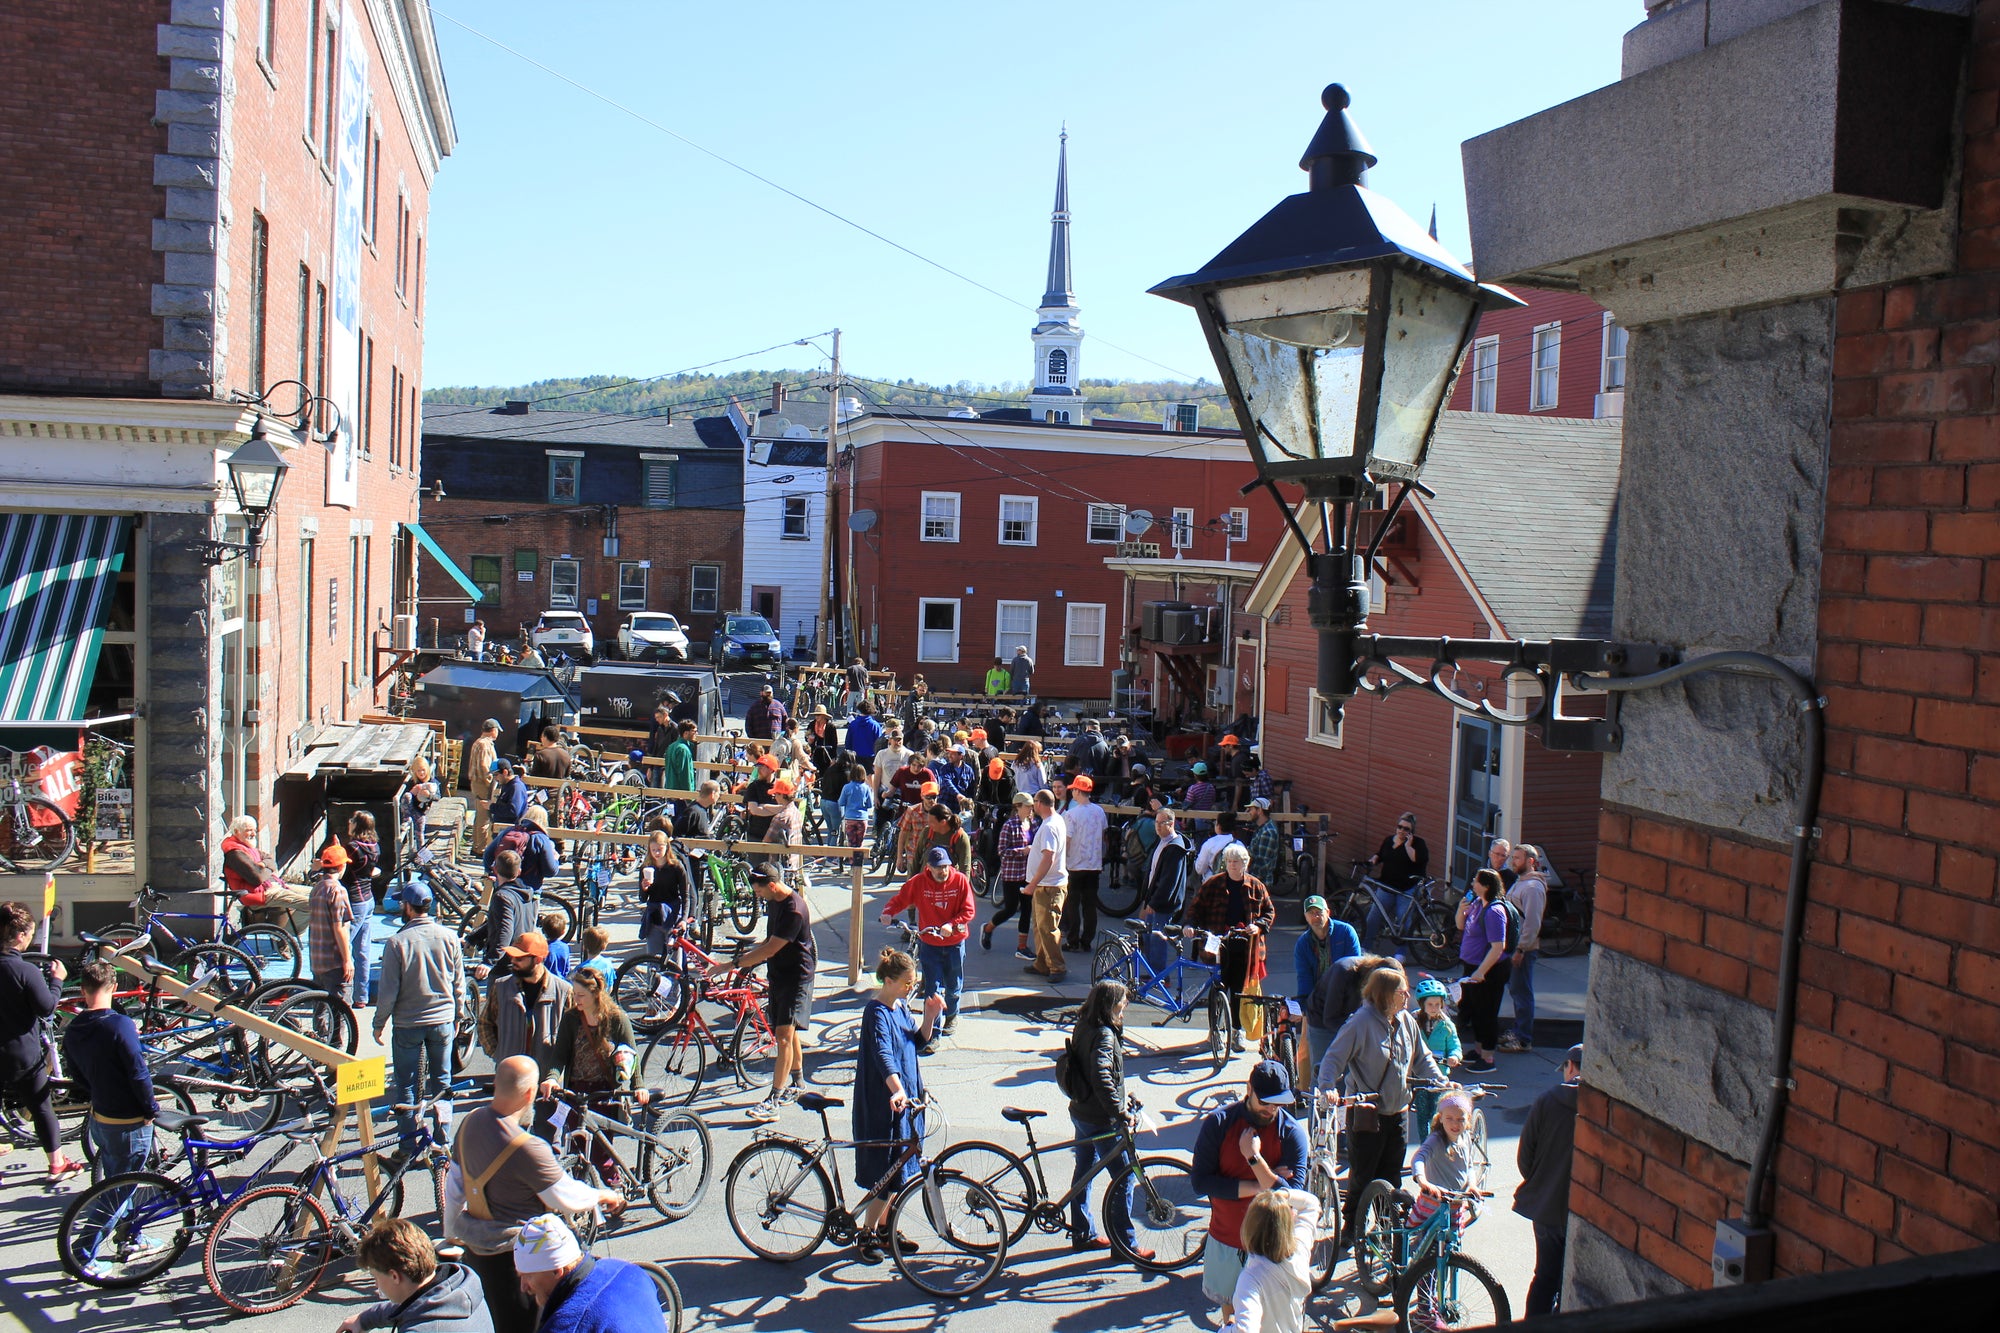 People walking around looking at used bikes resting on wooden racks in between brick buildings 